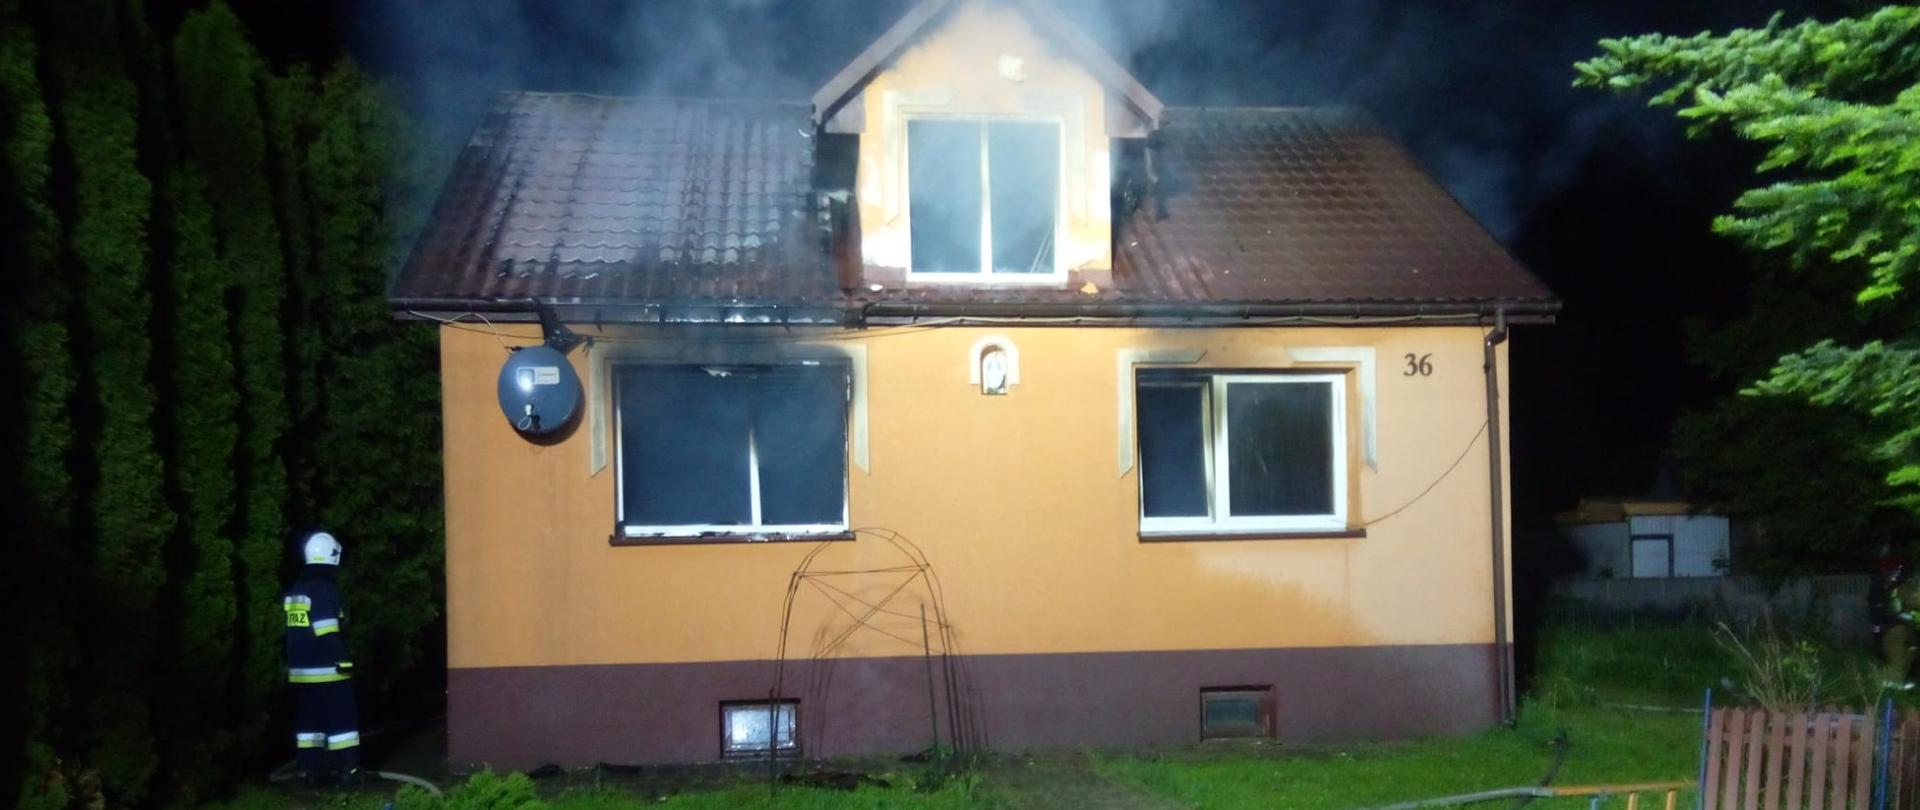 Zdjęcie przedstawia budynek mieszkalny, w którym wybuchł pożar. 